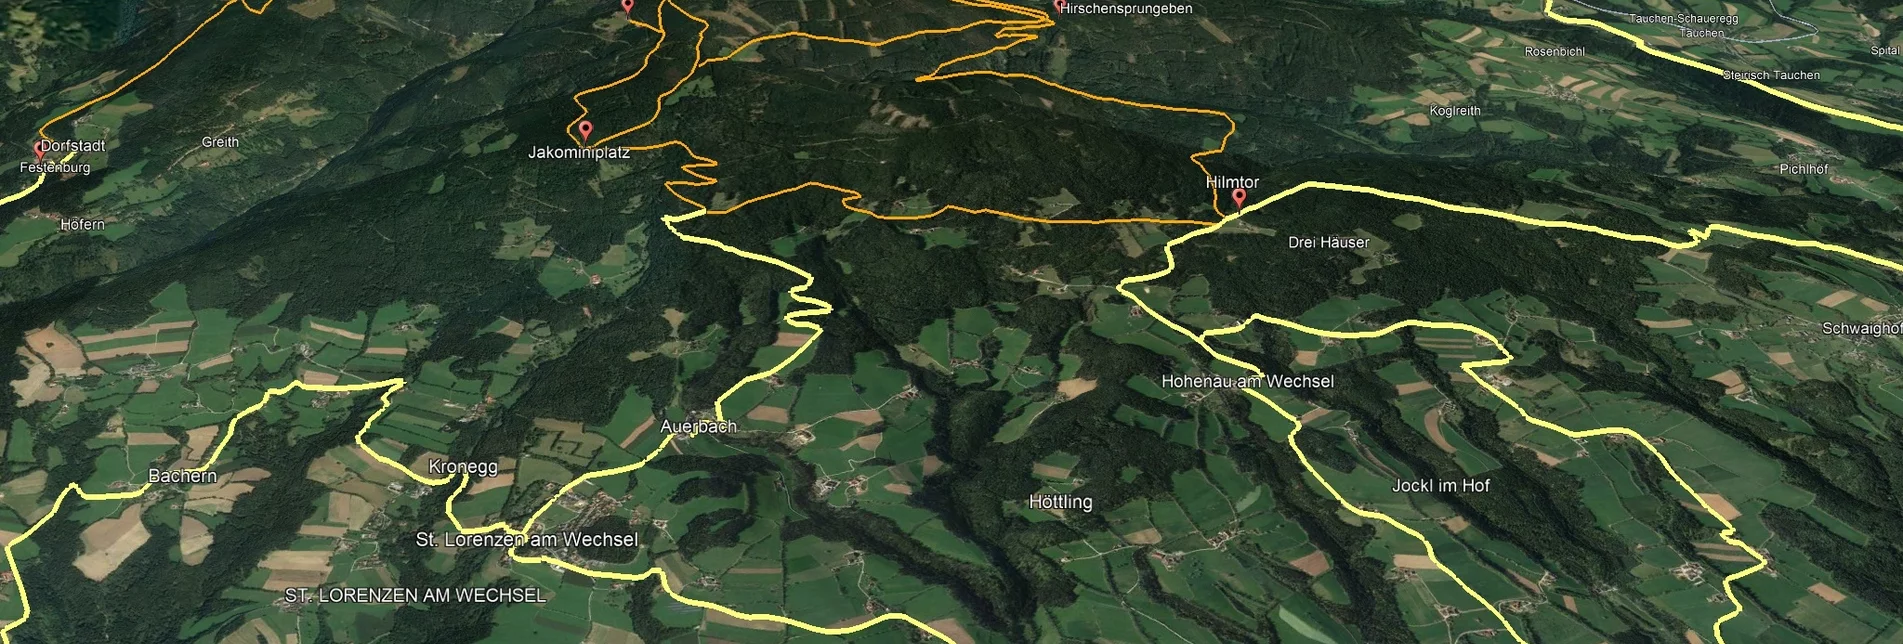 Mountain Biking PREVIEW Styrian Wexl Trails - Vorauer Schwaig Trail - Touren-Impression #1 | © Verein Tourismusentwicklung Steirischer Wechsel